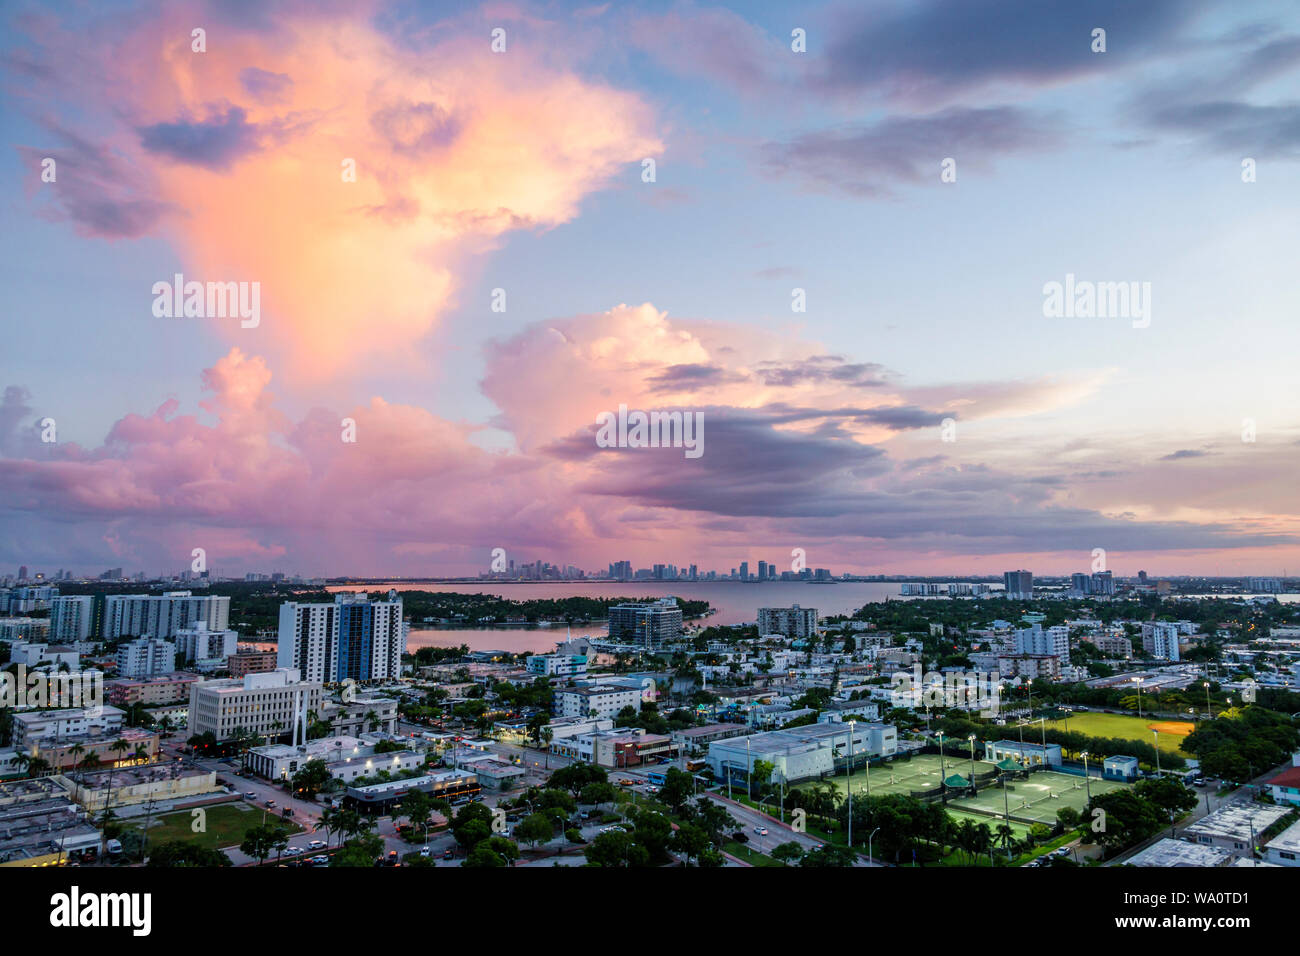 Miami Beach Florida, North Beach, Biscayne Bay, nubes clima cielo tormenta nubes, lluvia, horizonte de la ciudad, puesta de sol, FL190731016 Foto de stock